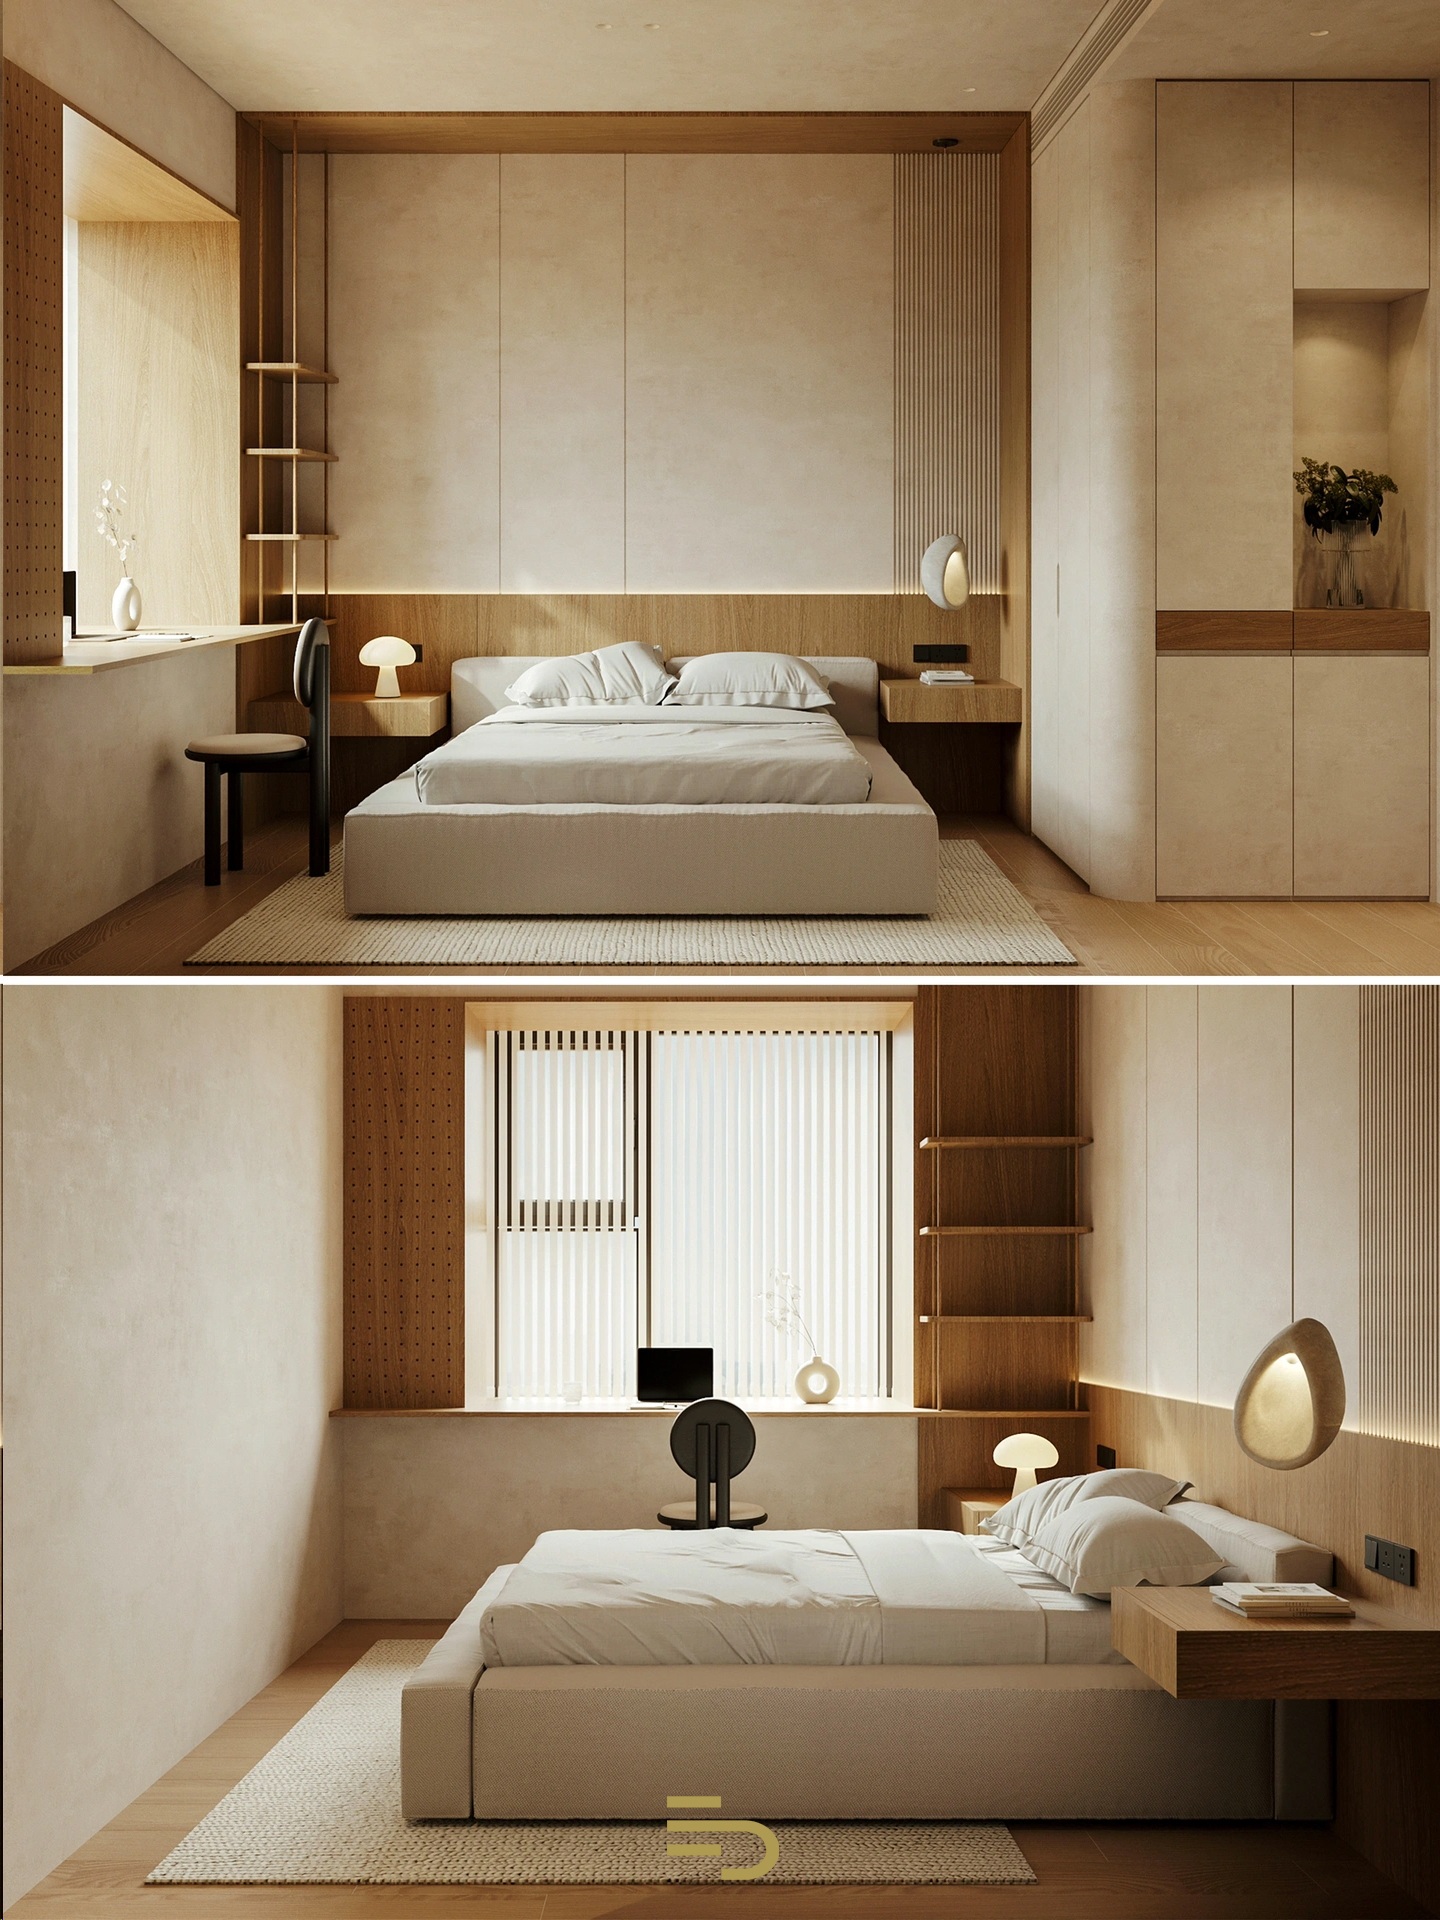 Phòng ngủ được bố trí nội thất đơn giản nhưng vẫn đáp ứng đầy đủ nhu cầu của gia chủ